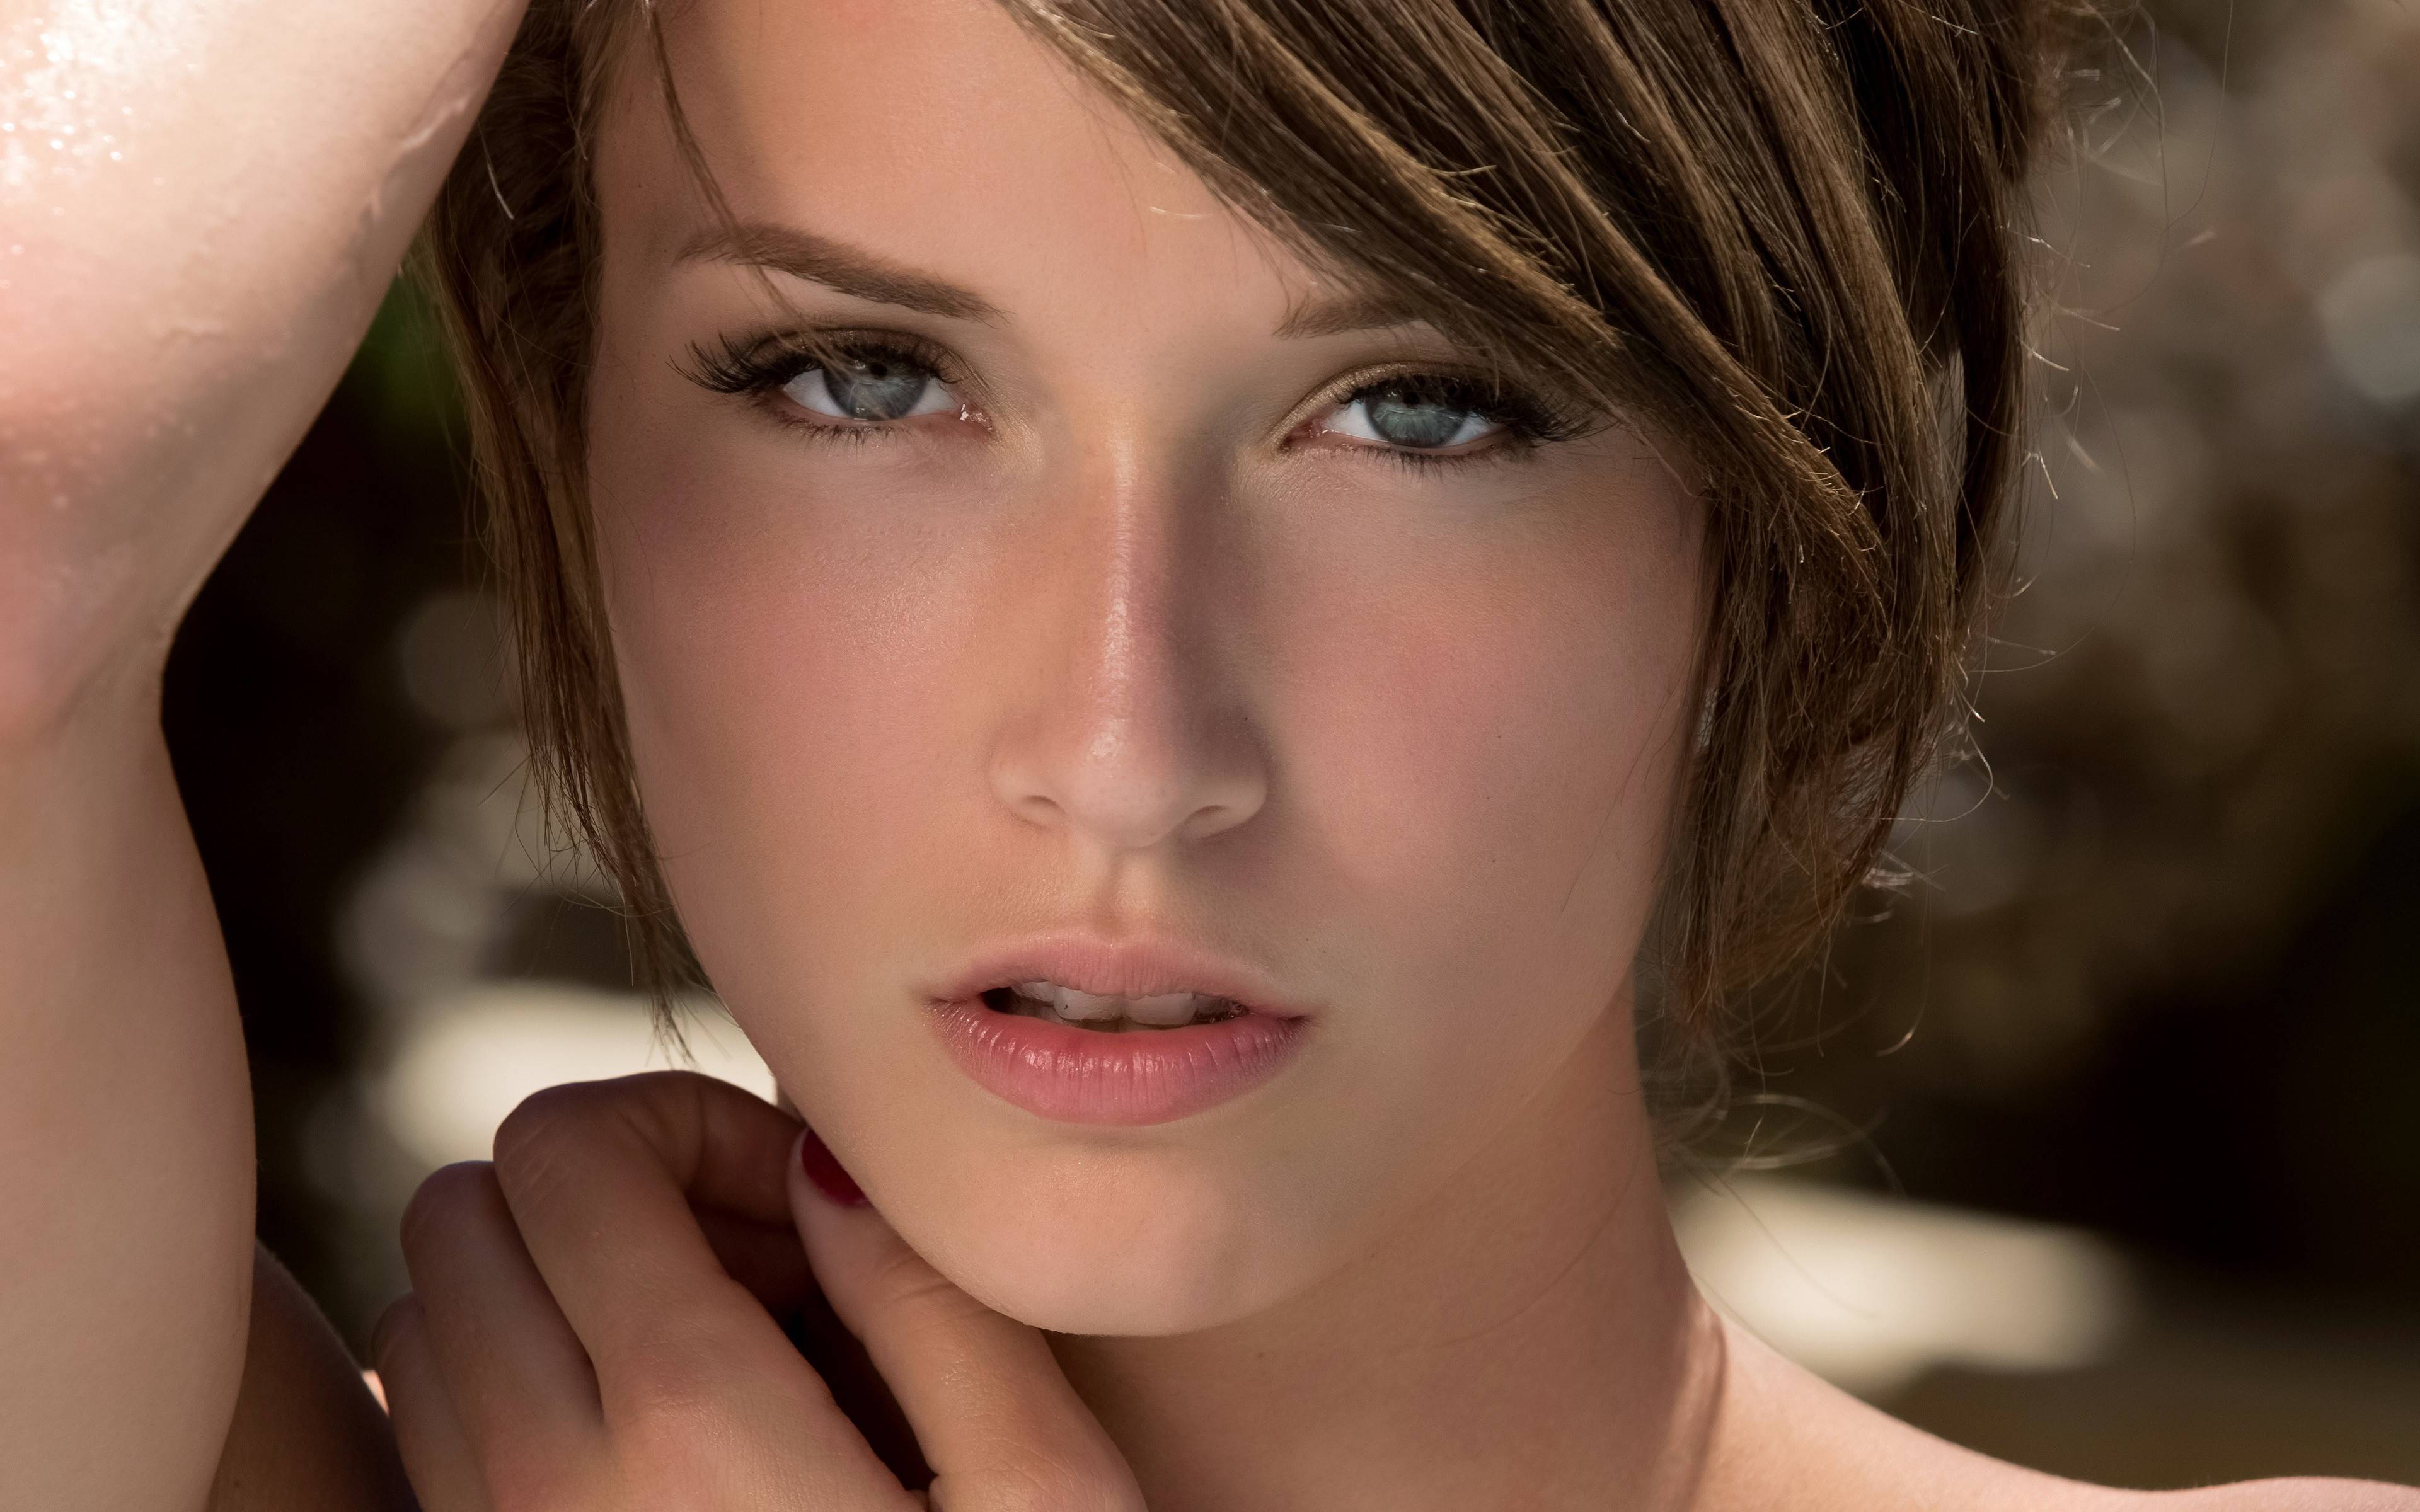 Malena Morgan Hot HD Models. Model